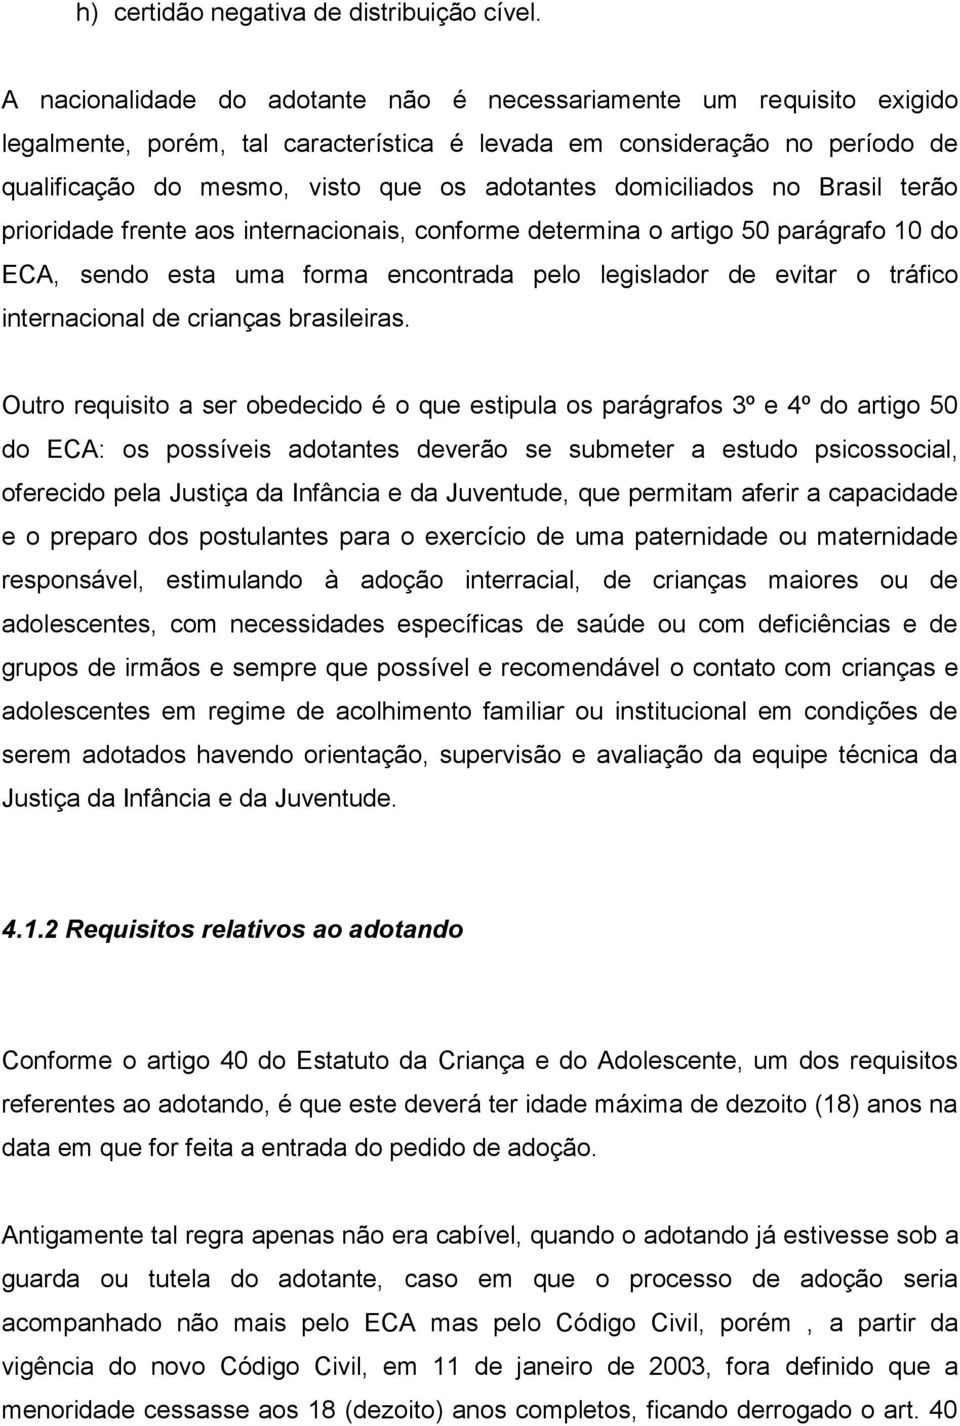 domiciliados no Brasil terão prioridade frente aos internacionais, conforme determina o artigo 50 parágrafo 10 do ECA, sendo esta uma forma encontrada pelo legislador de evitar o tráfico